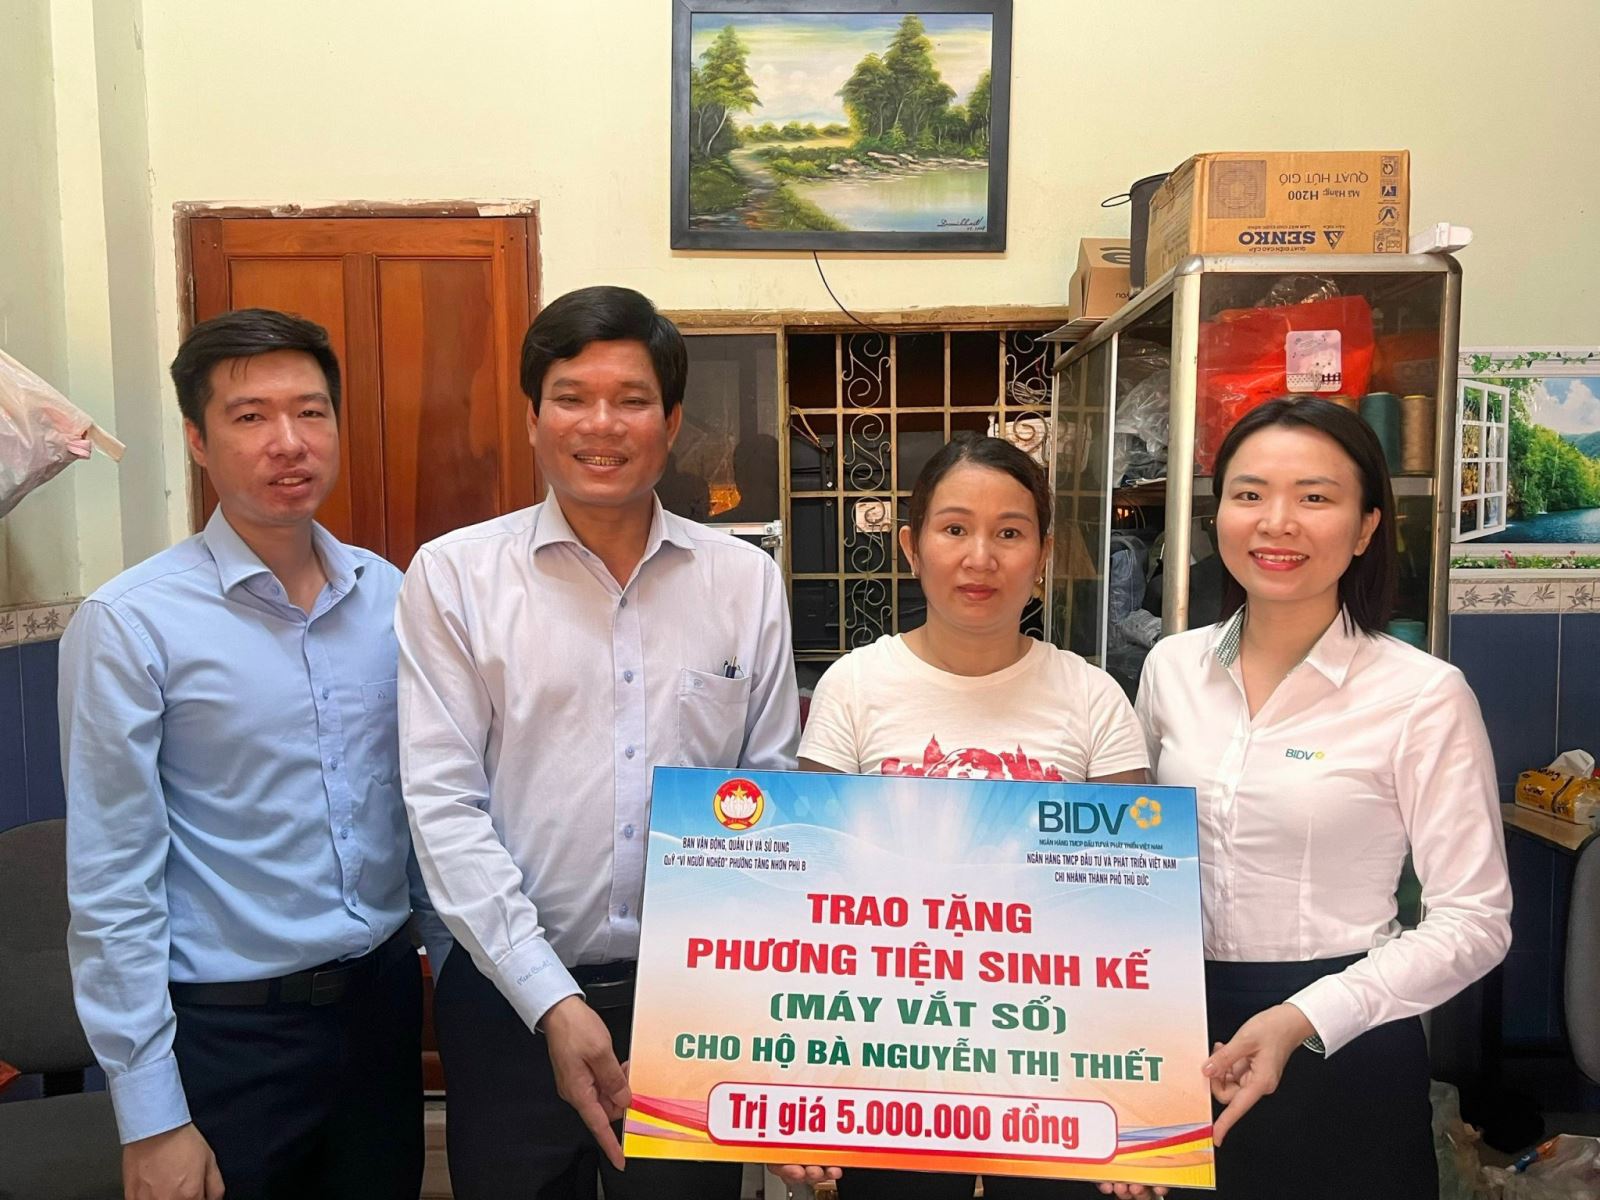 Ngân hàng BIDV, trao tặng máy vắt sổ trị giá 5 triệu đồng cho chị Nguyễn Thị Thiết, người có hoàn cảnh khó khăn